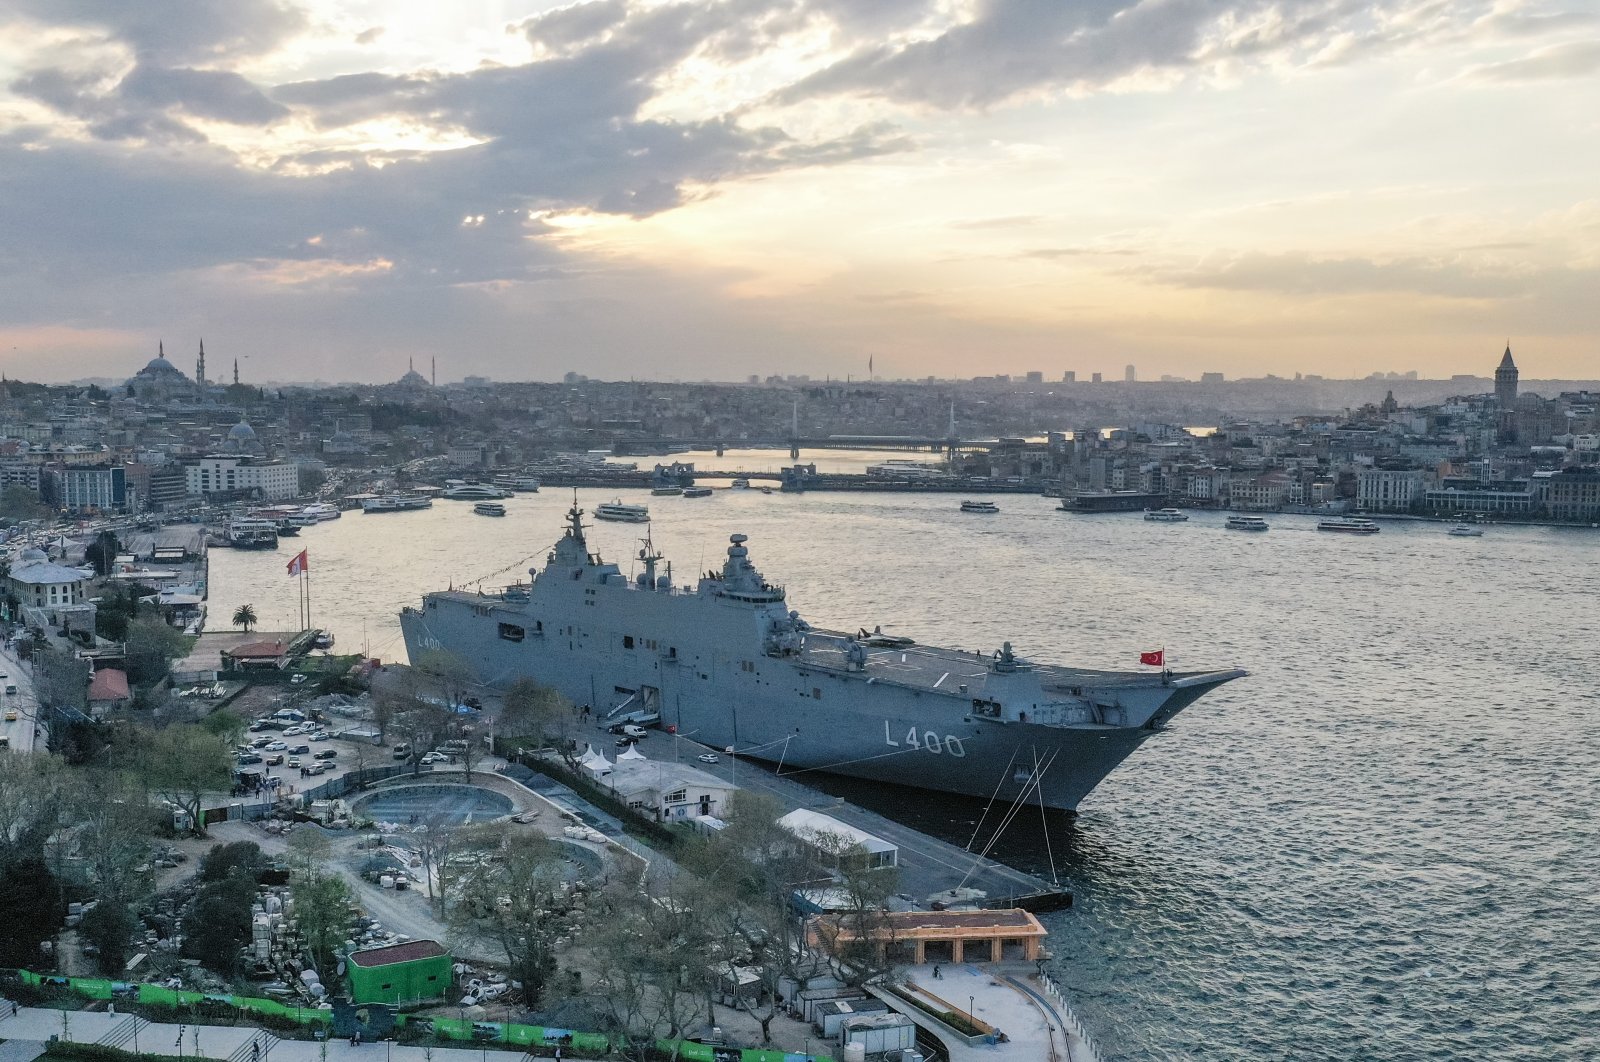 Türkiye melihat masuknya pengunjung saat membuka kapal perang terbesar untuk umum